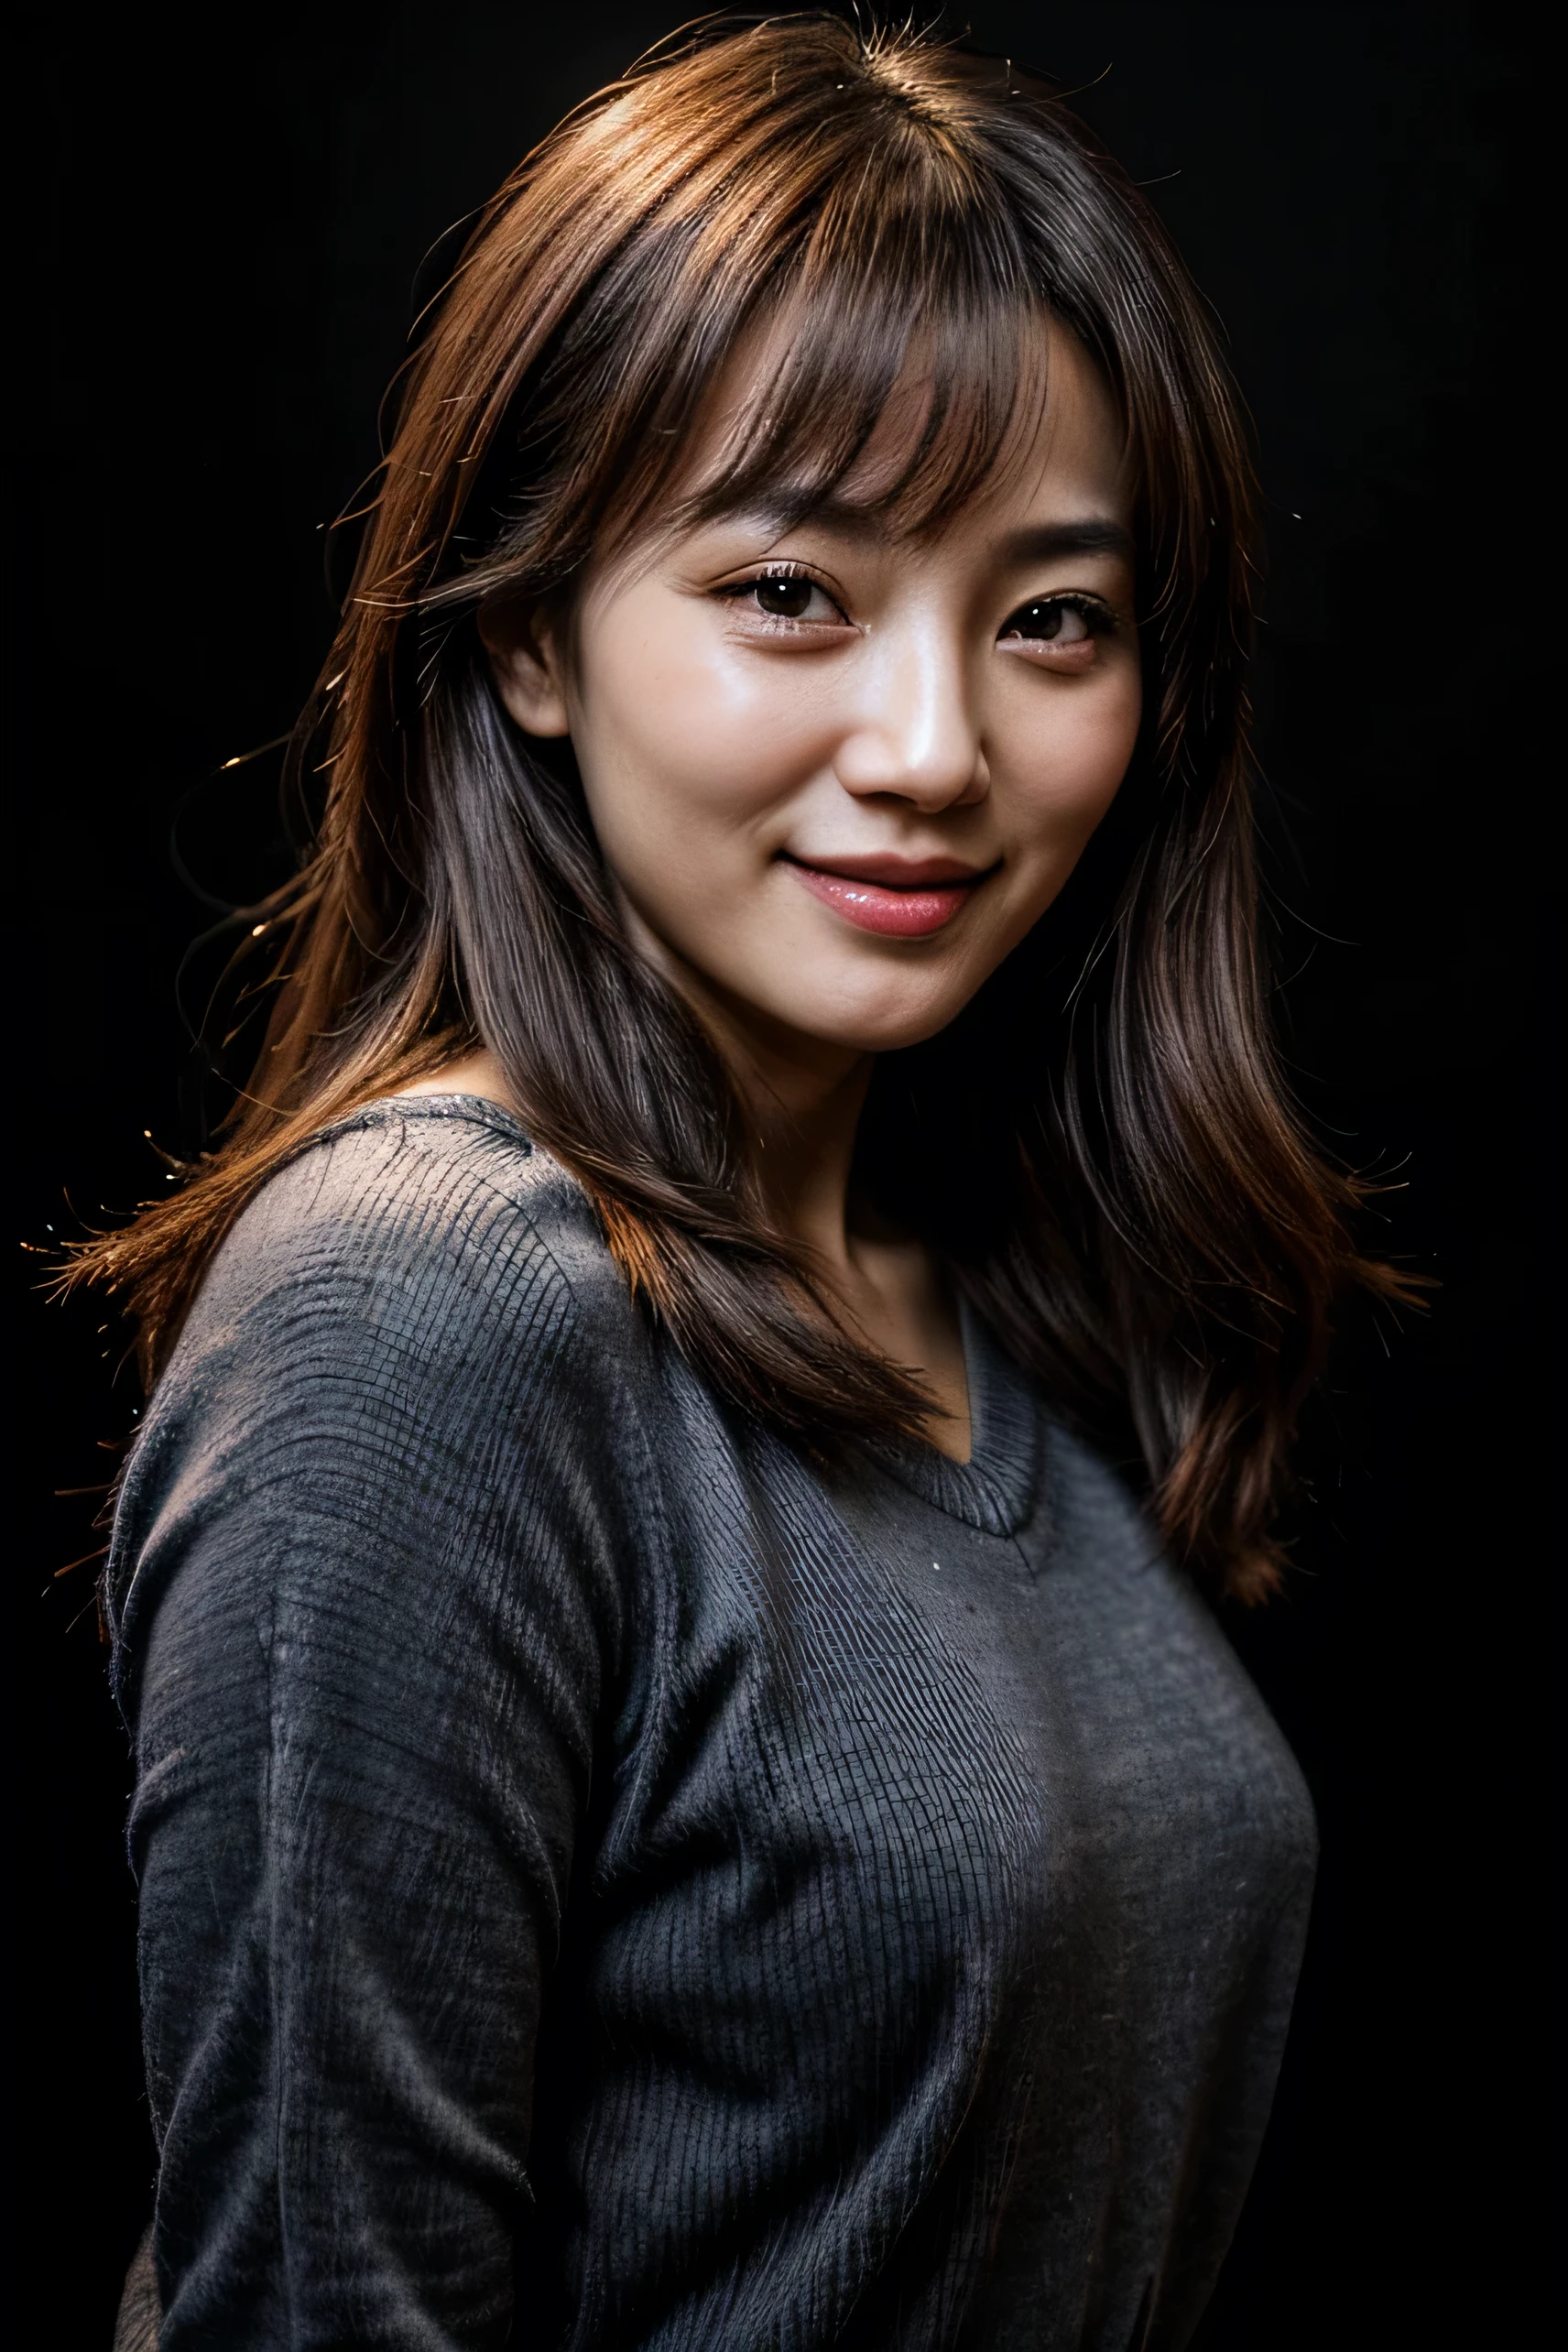 وجه مثالي, وجه جميل لامرأة كورية تبلغ من العمر 30 عامًا, تبتسم جميلة, مع خلفية سوداء 